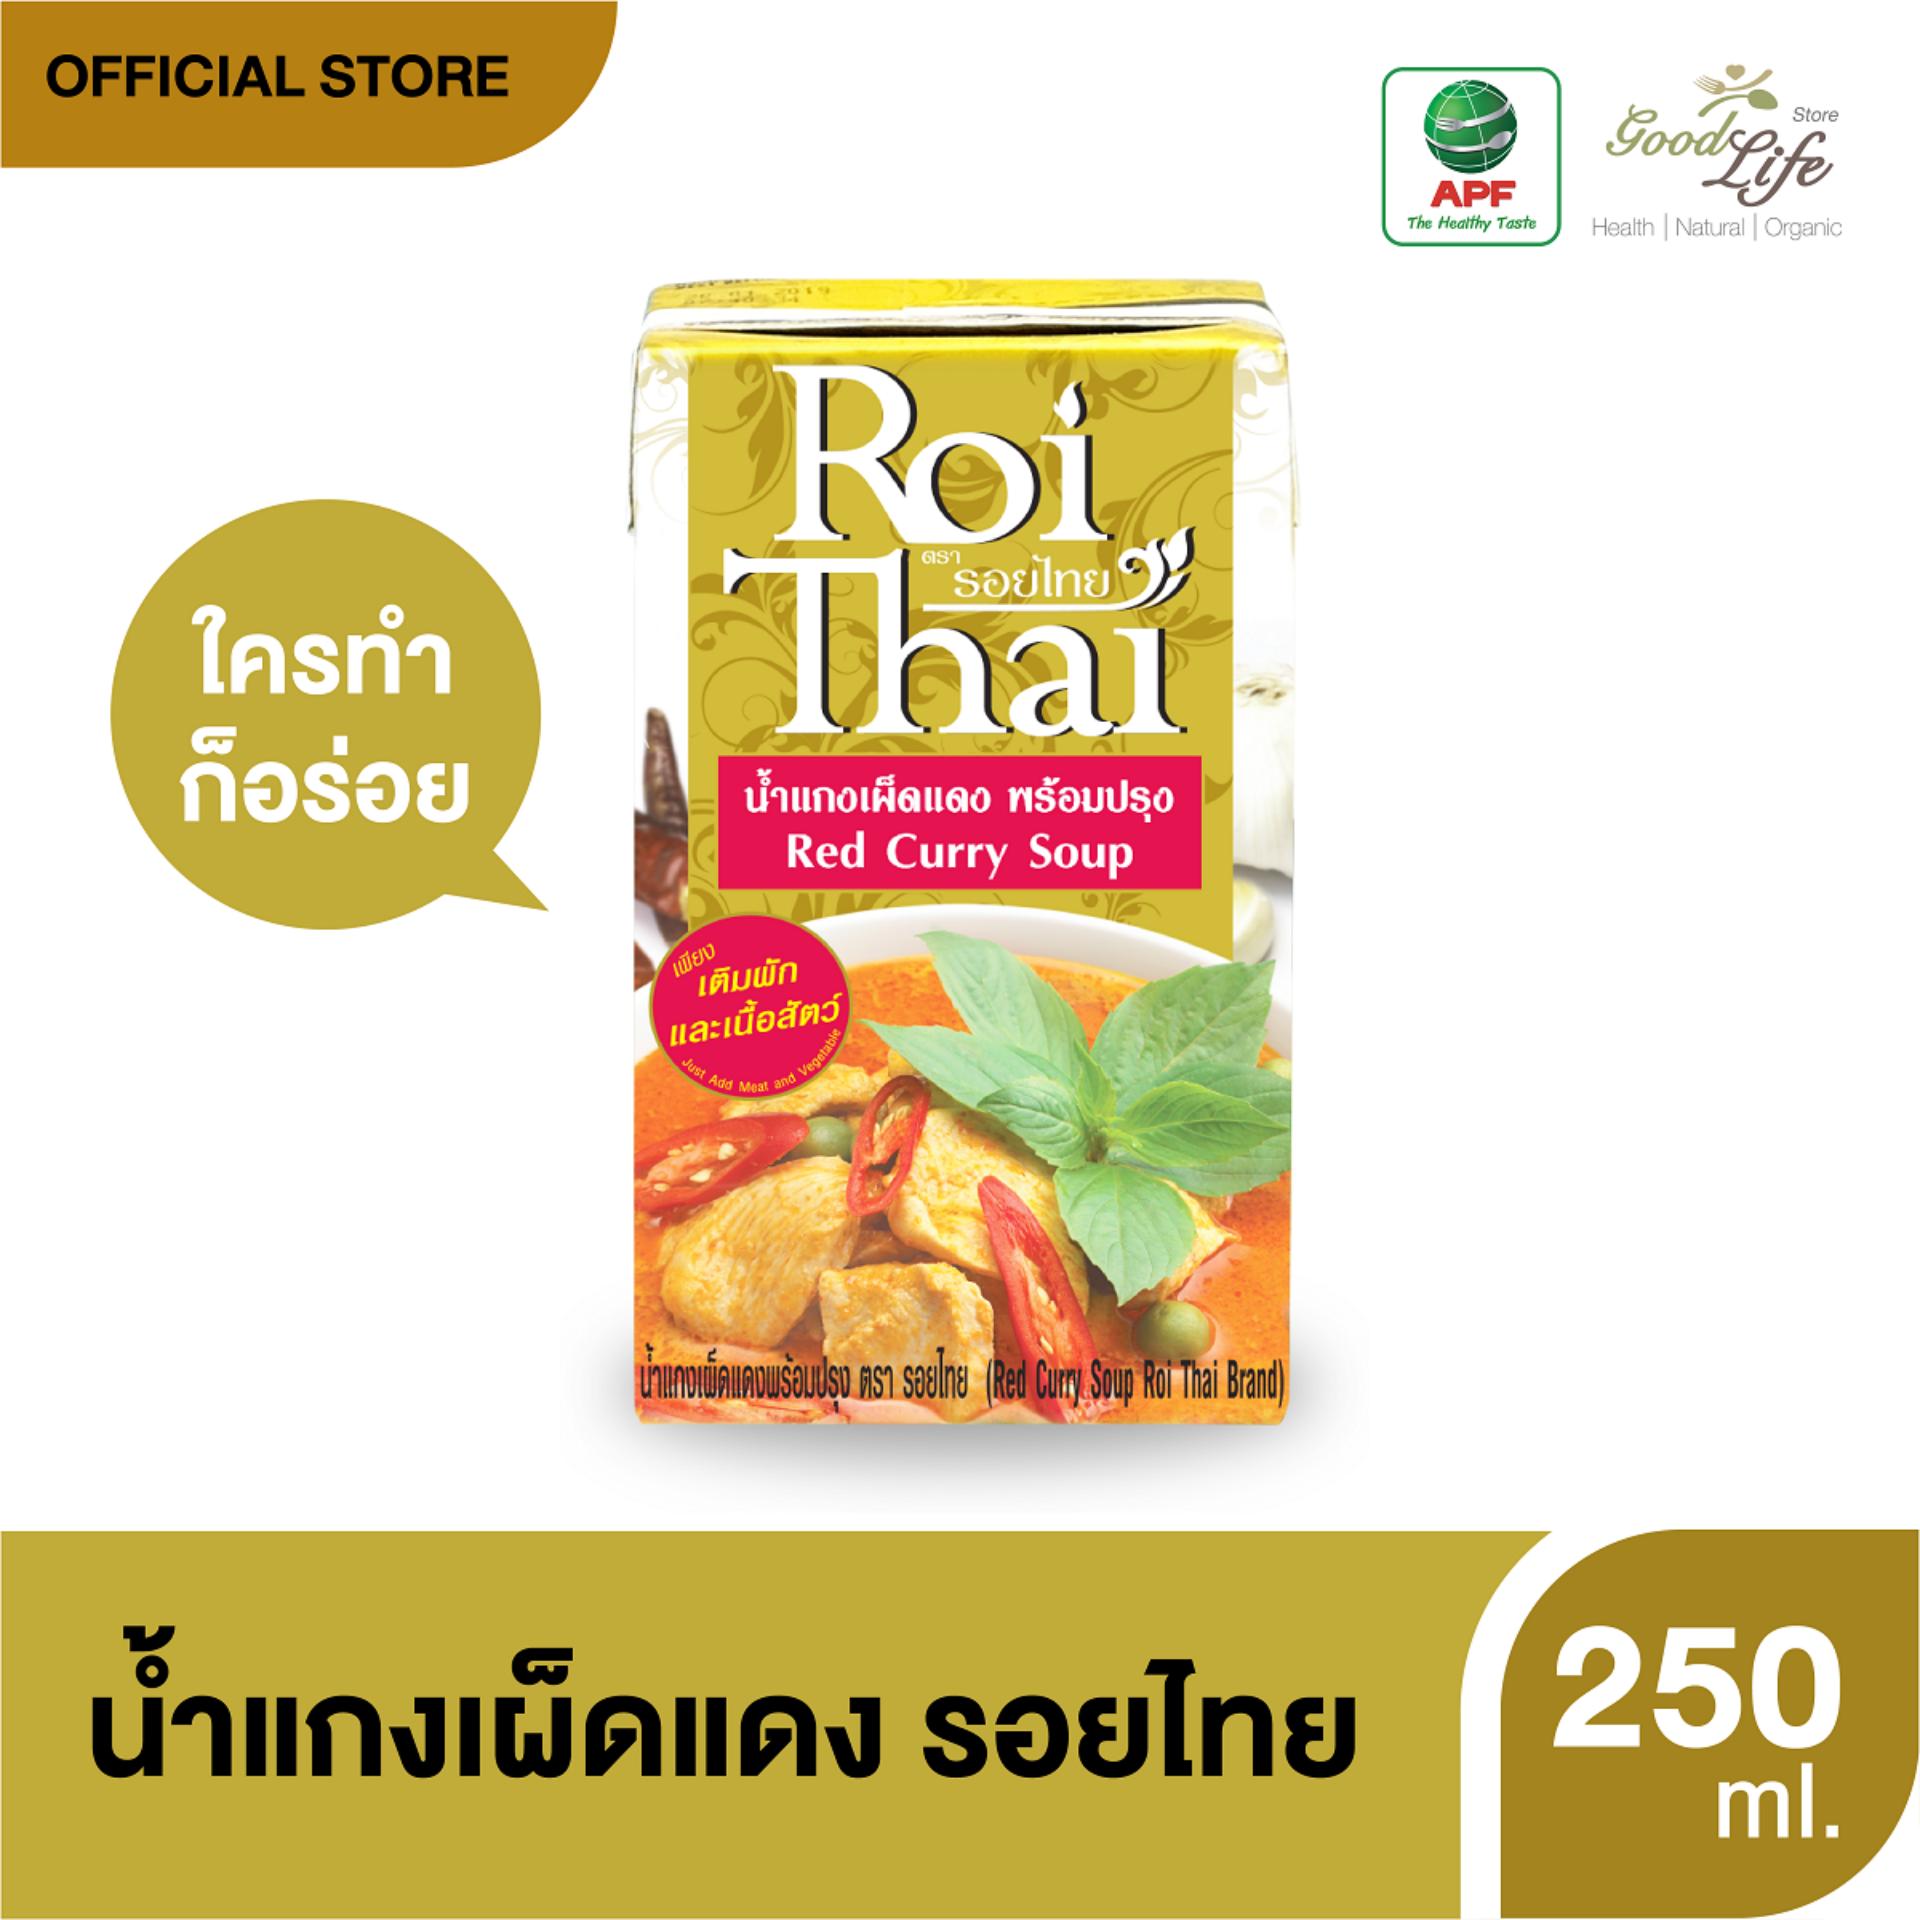 Roithai รอยไทยน้ำแกงเผ็ดแดง 250 ml x 6 กล่อง